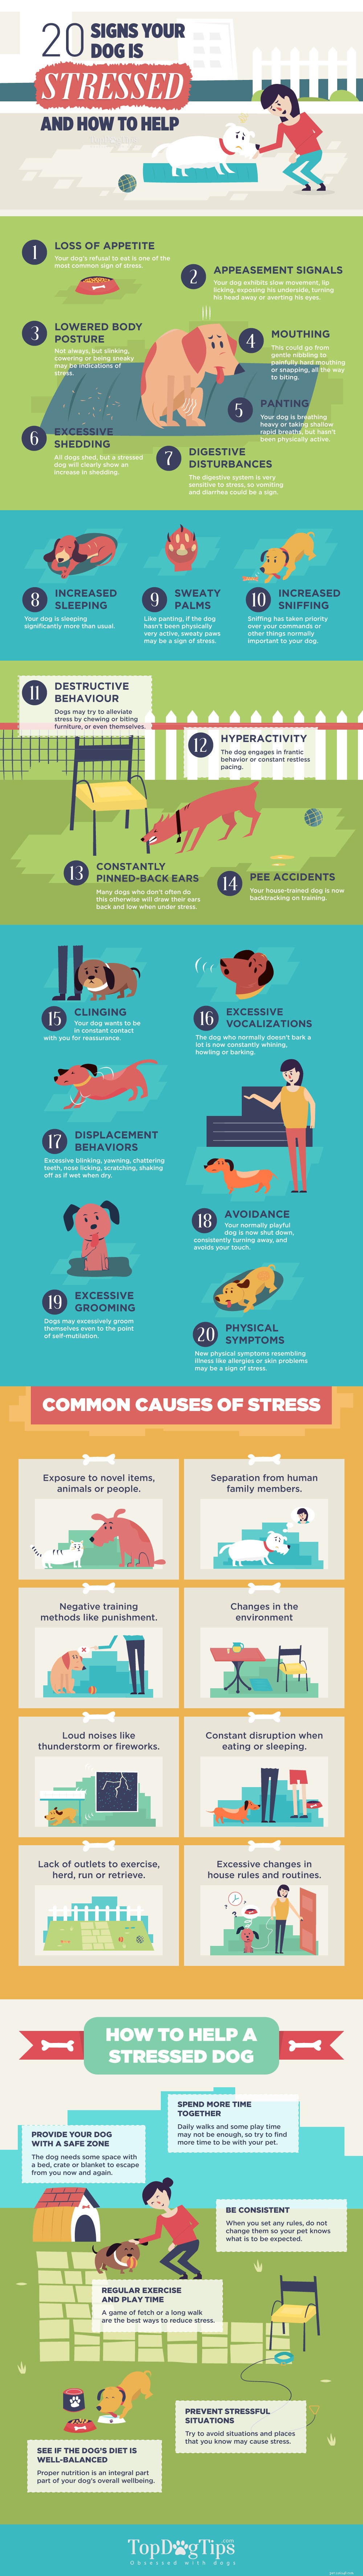 20 signes de stress chez les chiens [infographie]